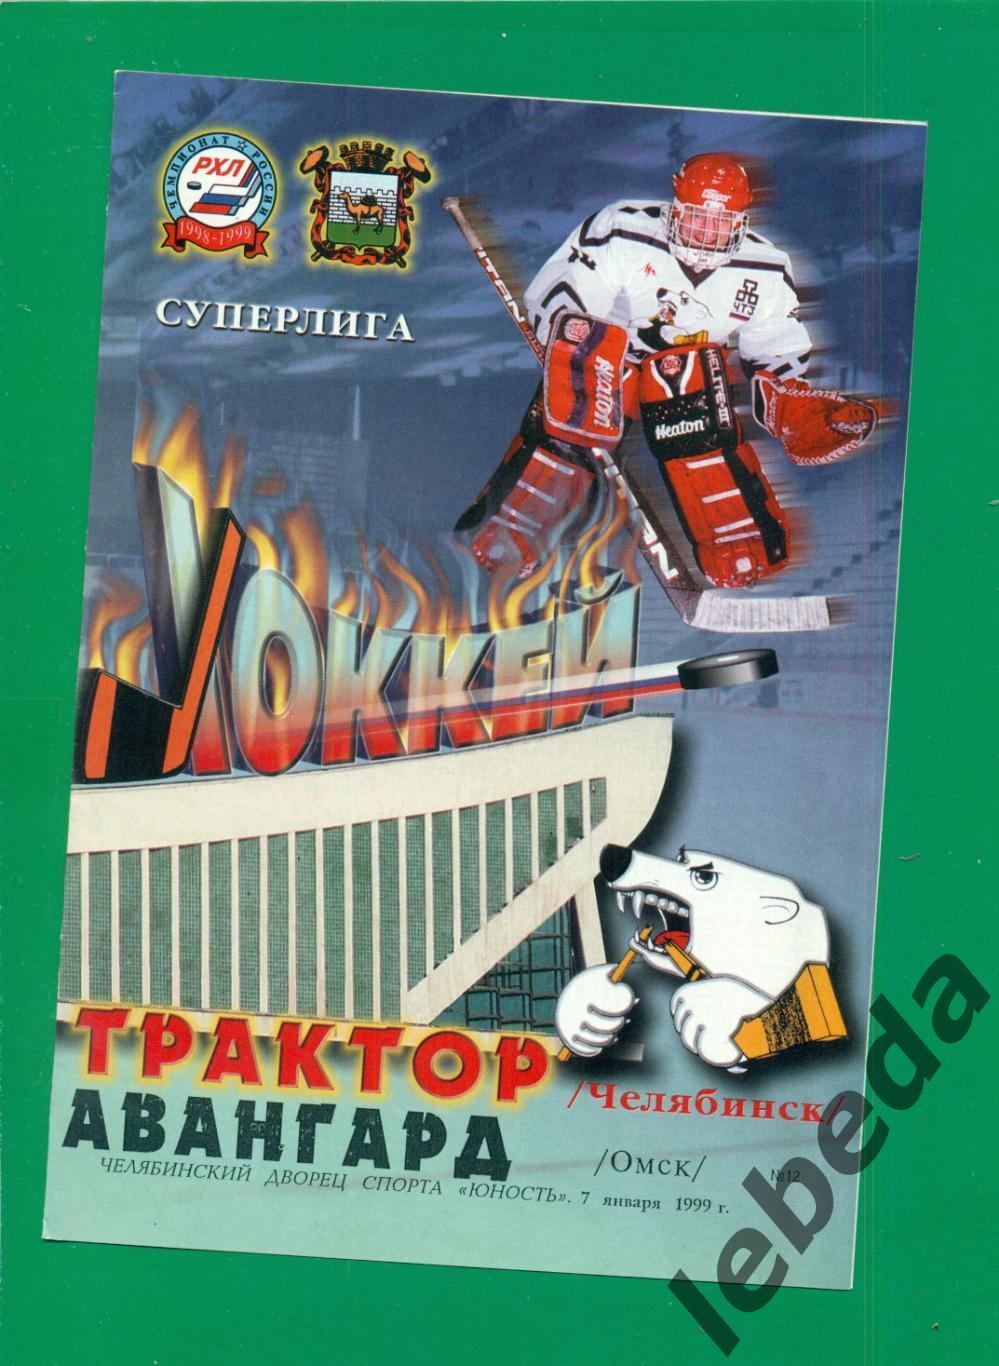 Трактор Челябинск - Авангард Омск - 1998 / 1999 г. (07.01.1999.)